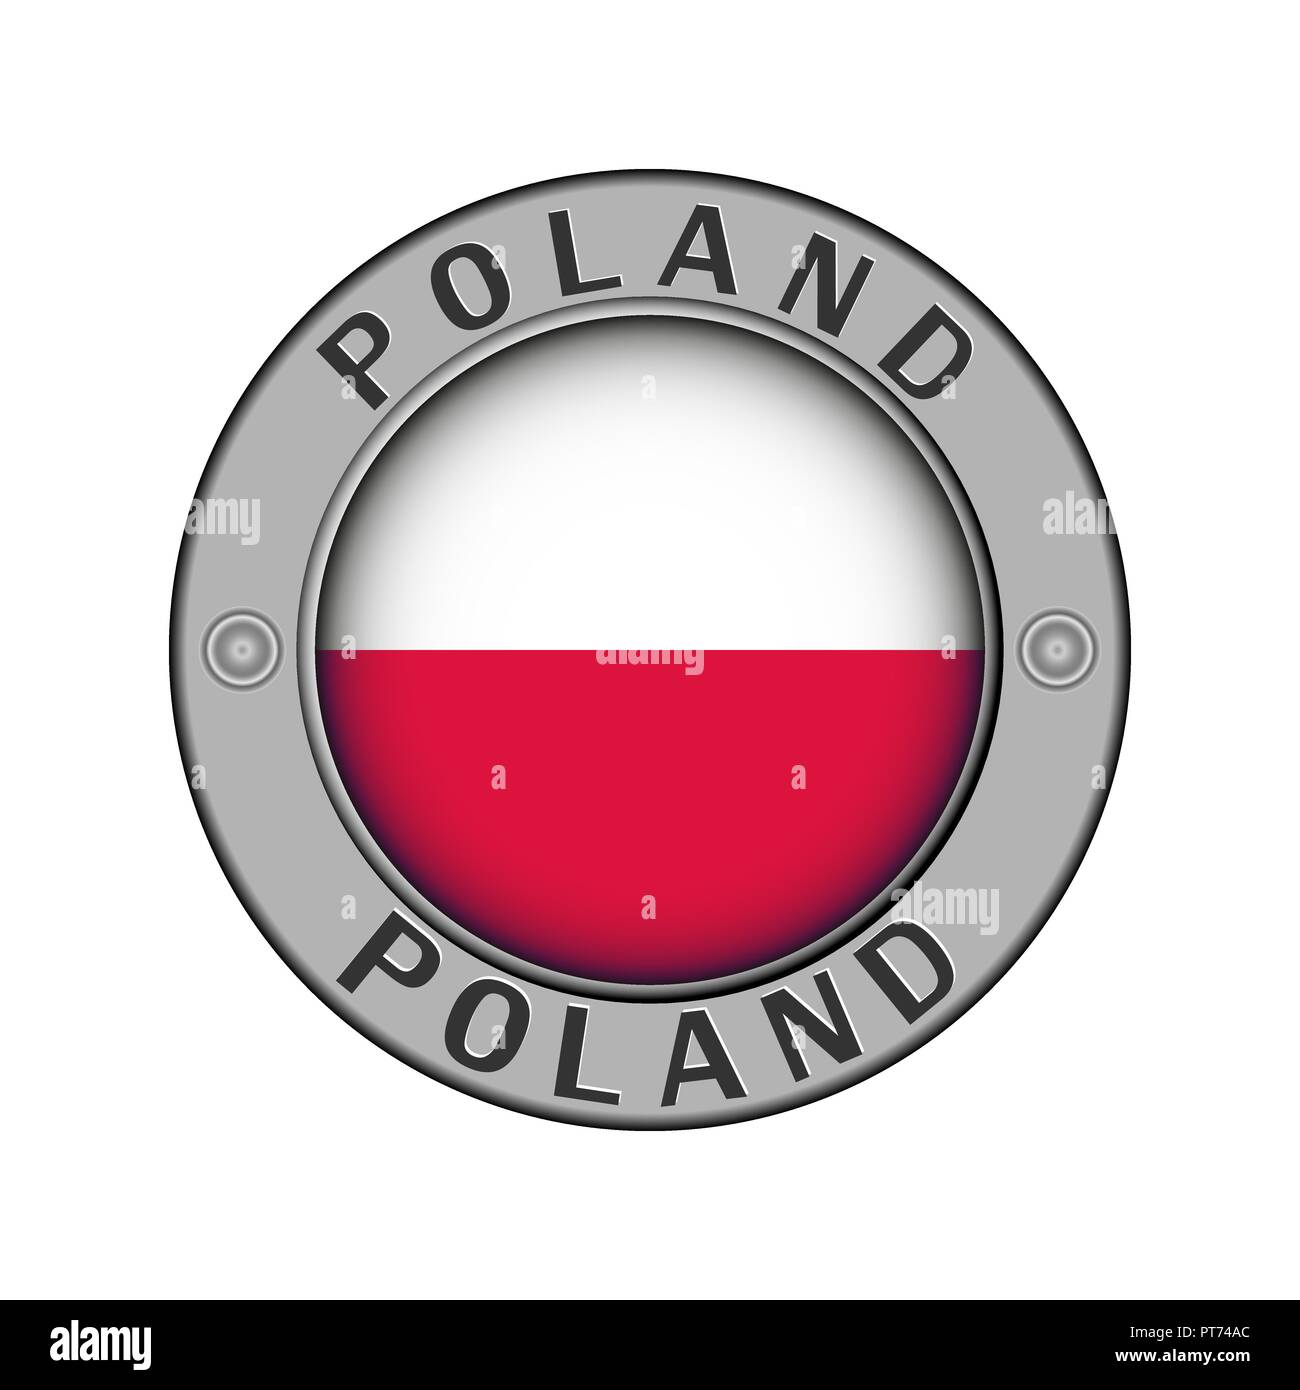 Rotondo di metallo medaglione con il nome del paese di Polonia e un indicatore rotondo nel centro Illustrazione Vettoriale